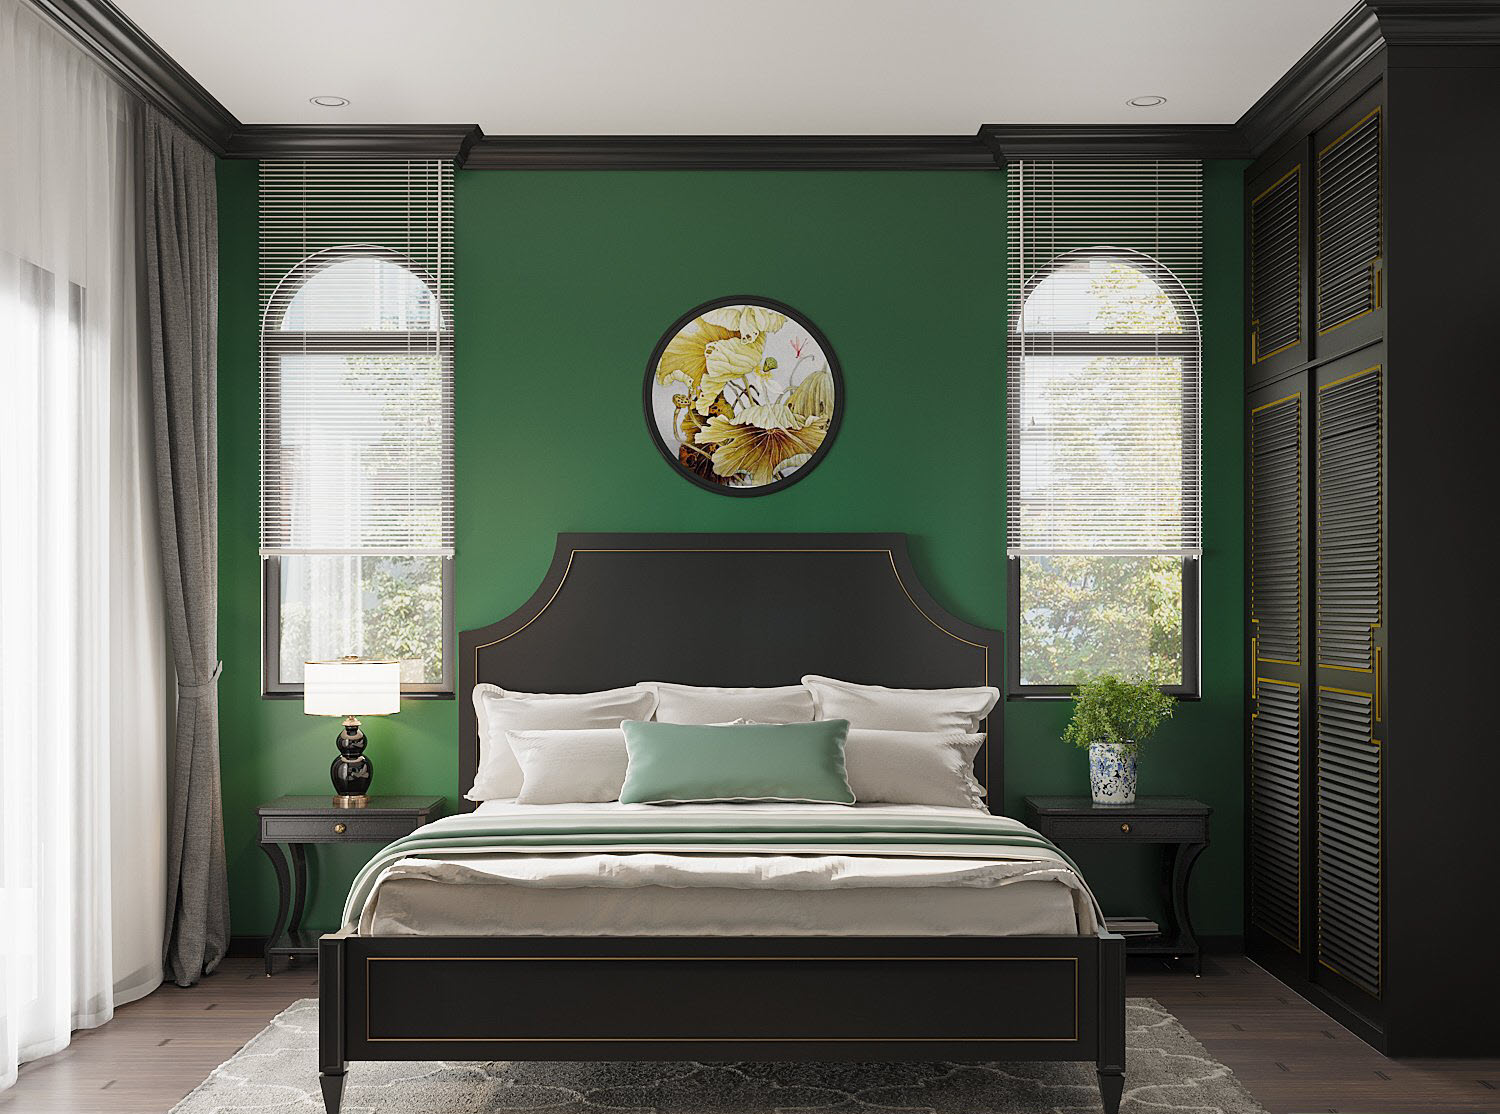 Phòng ngủ thứ ba bắt mắt với tường đầu giường sơn màu xanh lá cây, làm nền cho nội thất gỗ màu đen tuyền thêm phần nổi bật hơn.